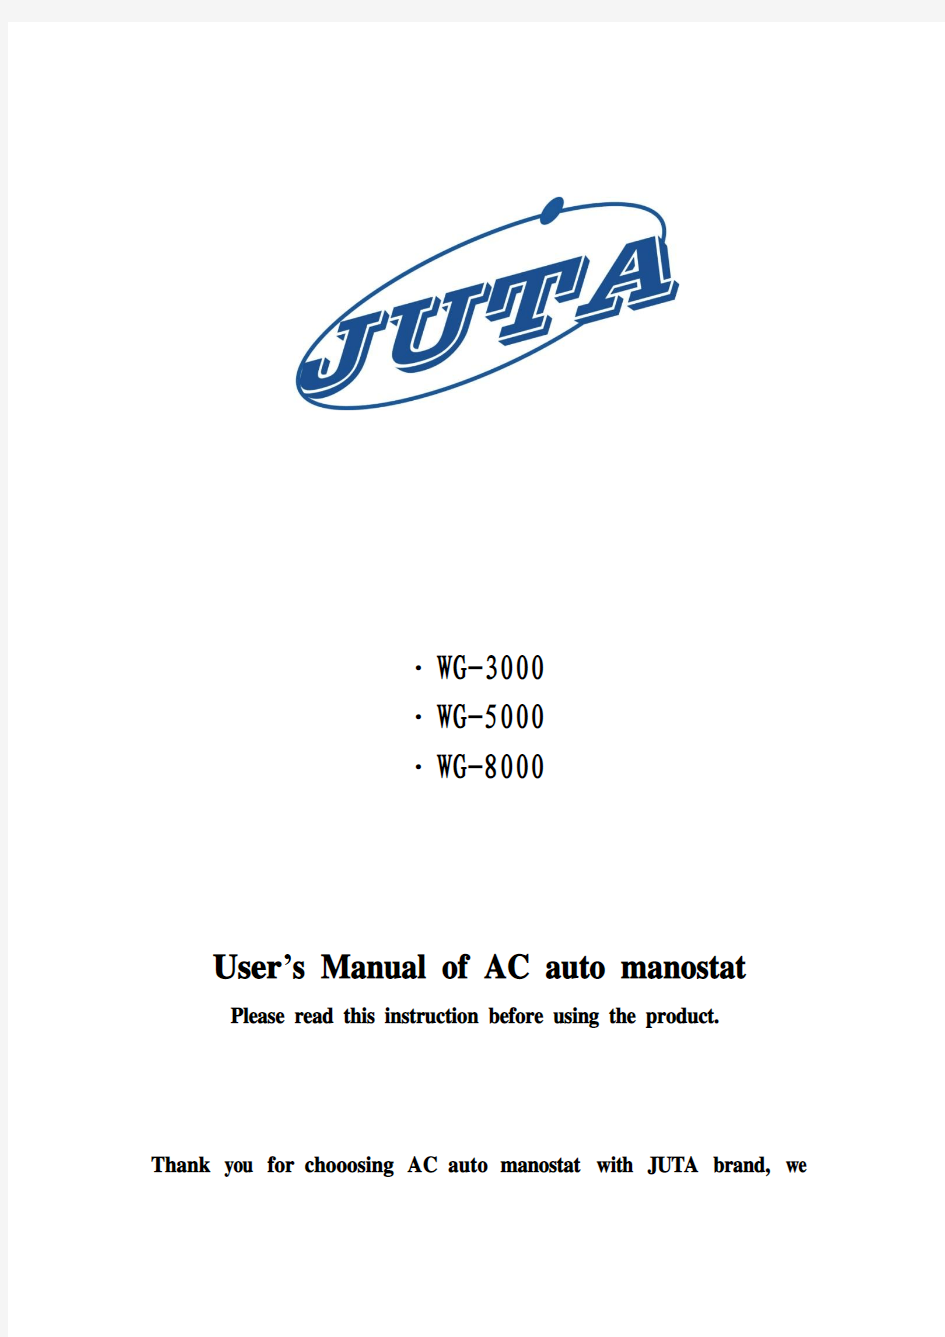 user's manual